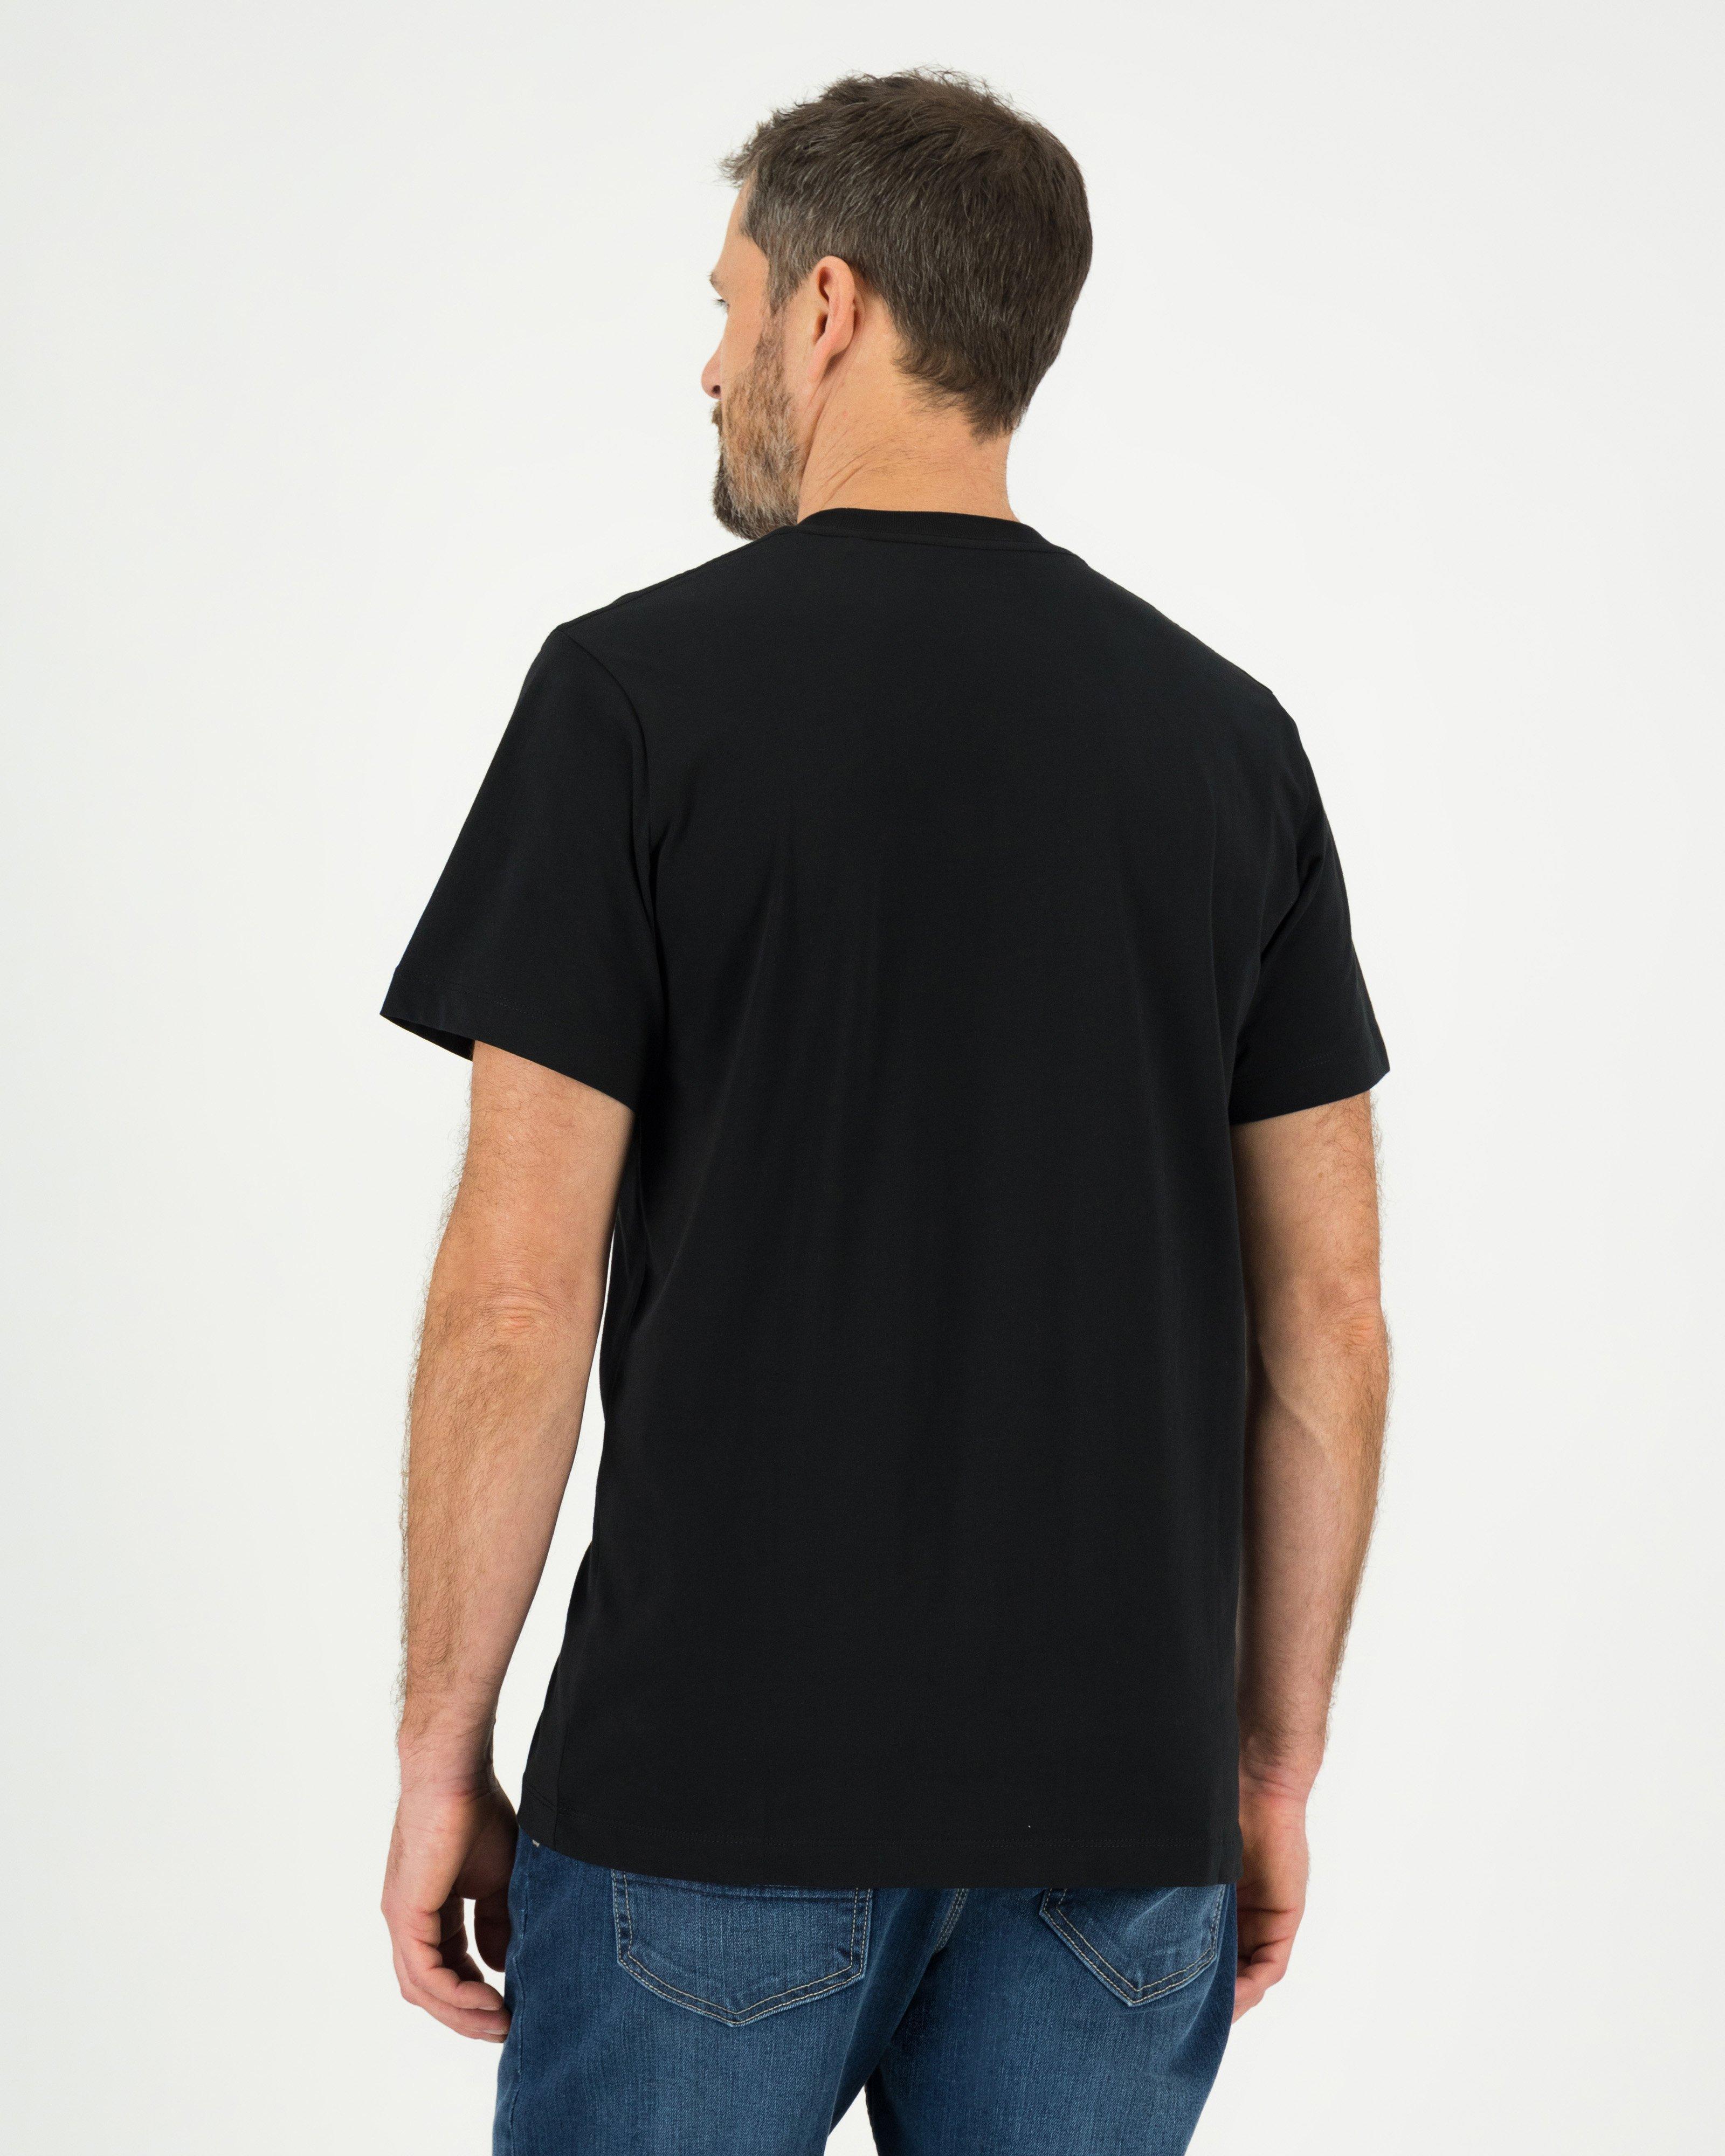 Jack Wolfskin Men’s Essential Cotton T-shirt  -  Black